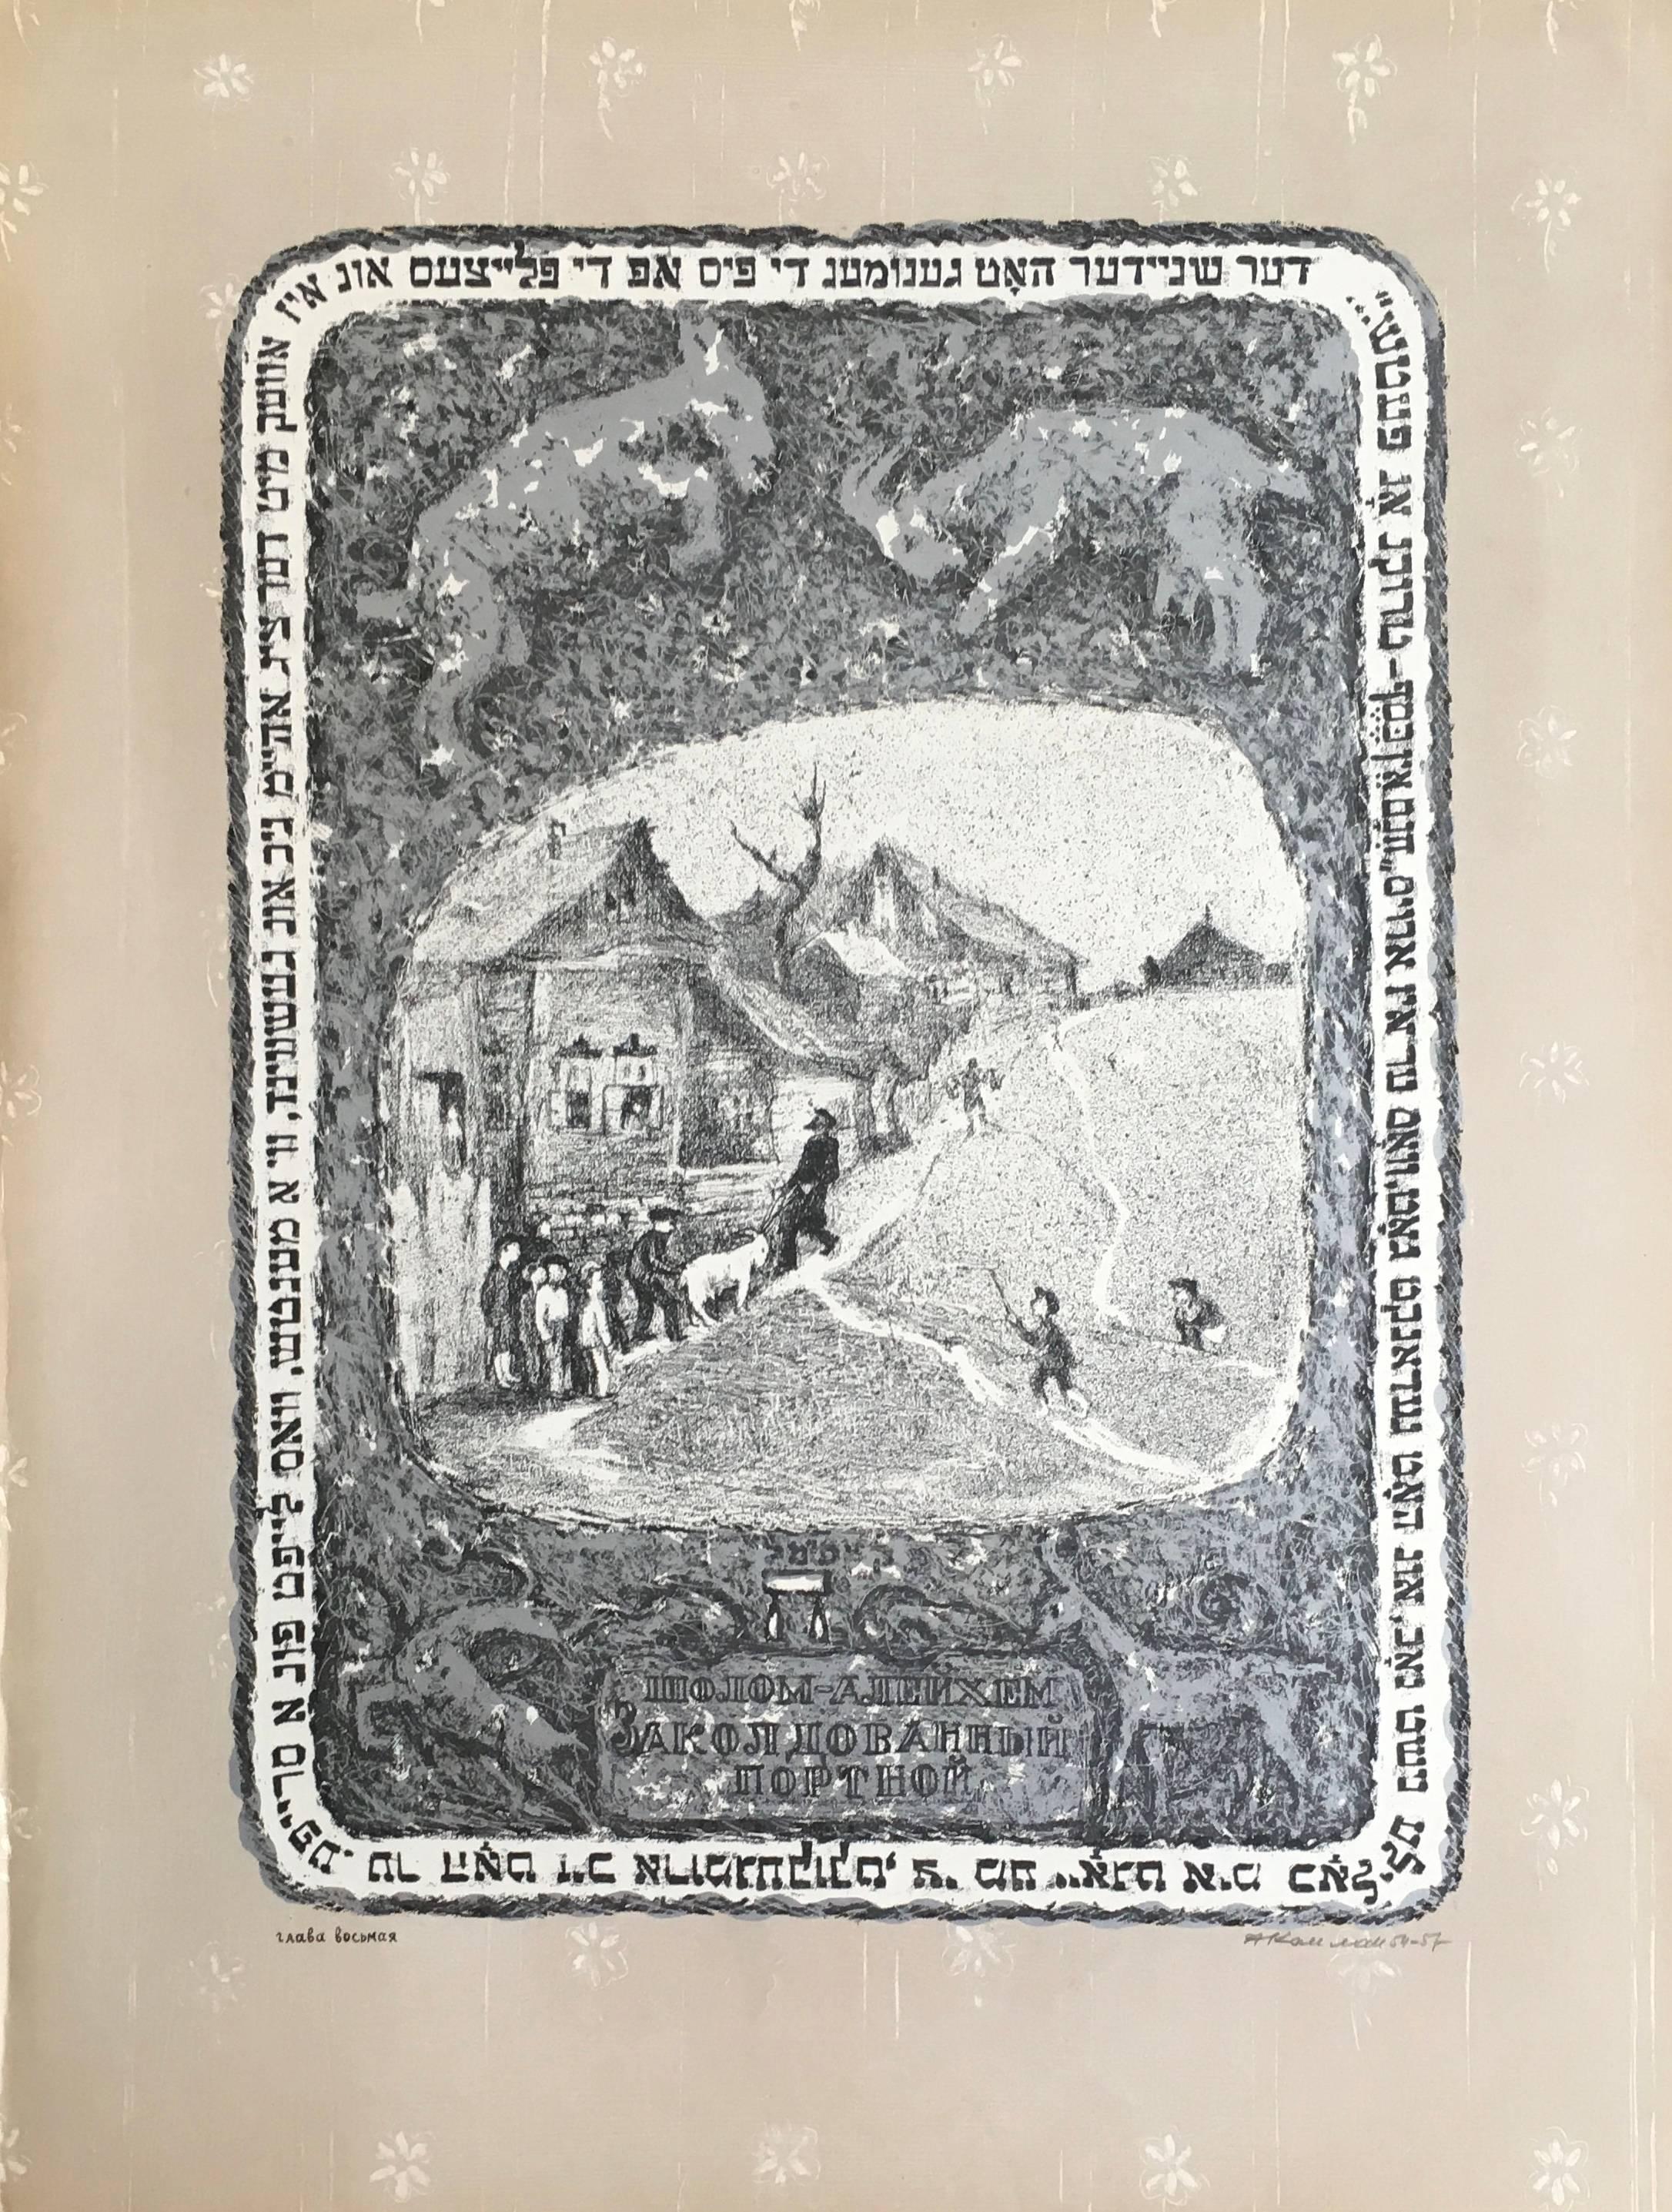 Anatoli Lvovich Kaplan Print – VIntage Russische Schtetl-Szene, Judaica Lithographie